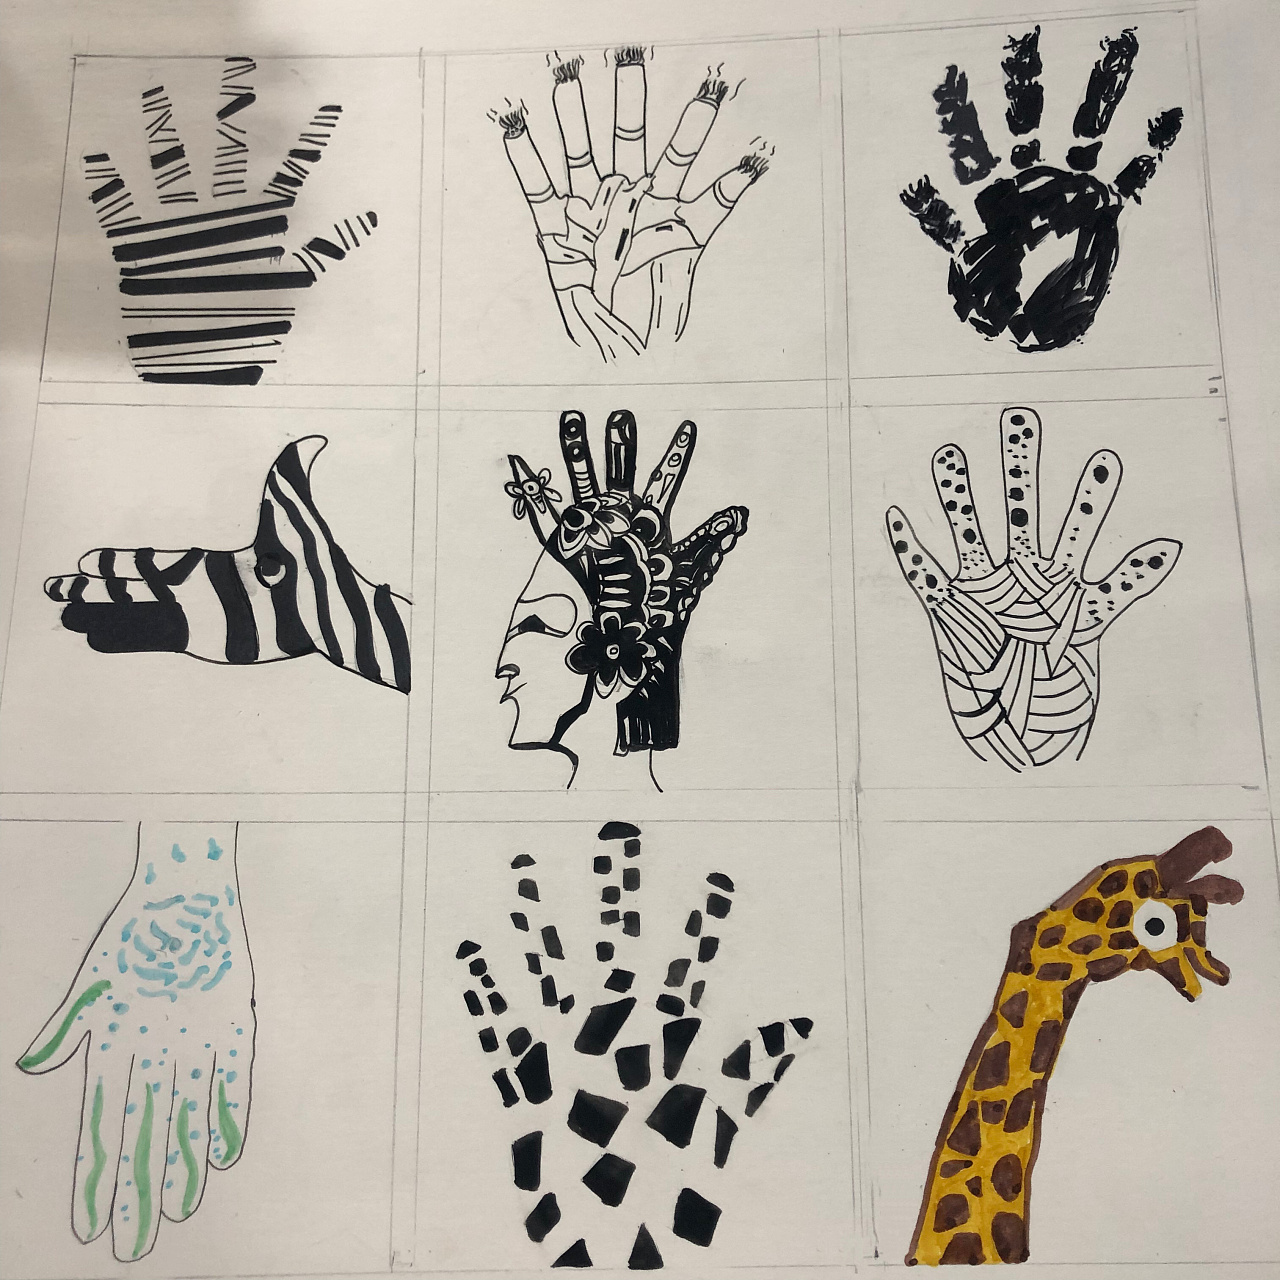 关于手的多样化视觉想象图形表述